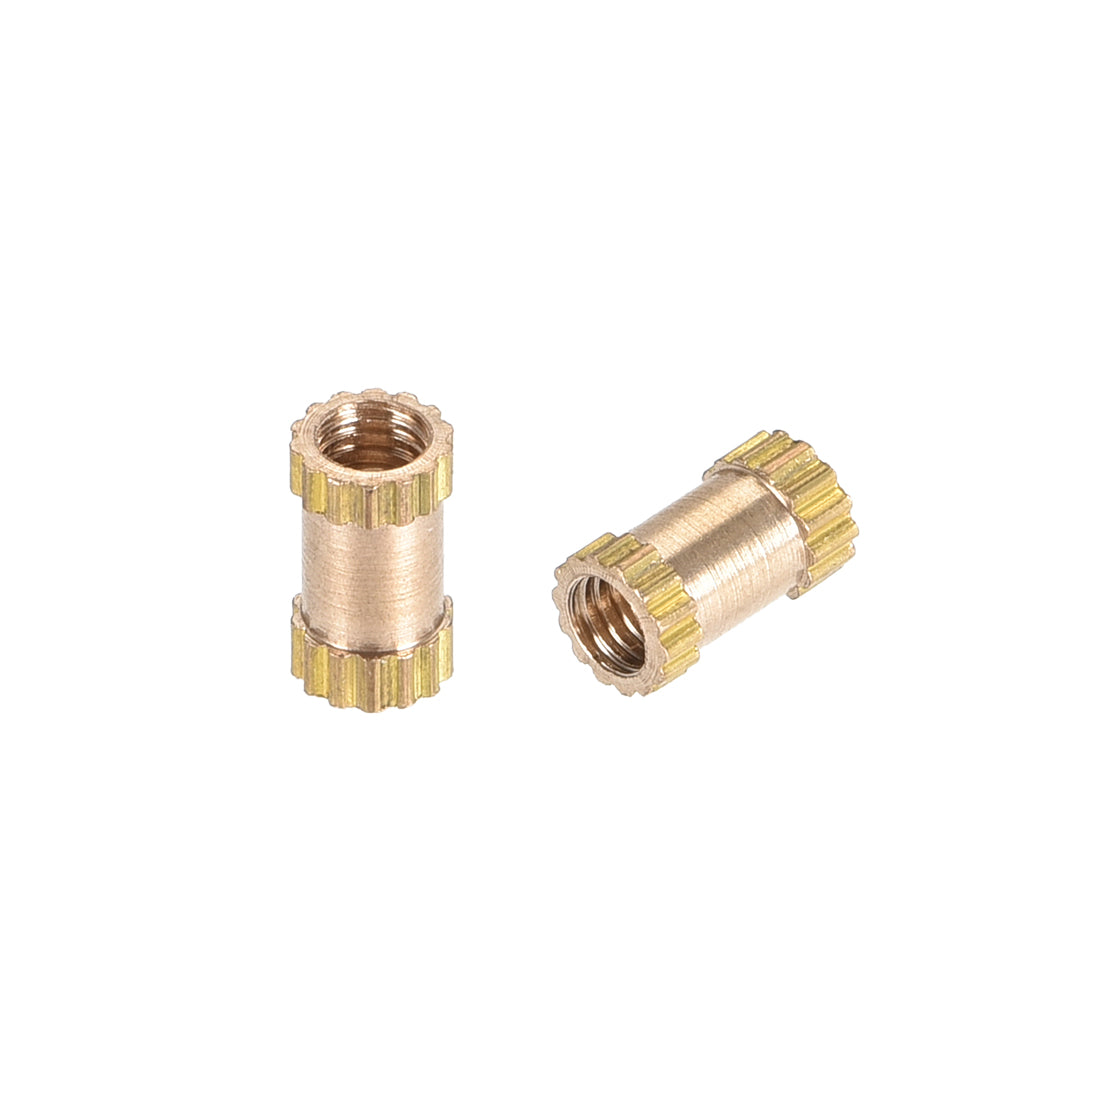 uxcell Uxcell Knurled Insert Nuts, M2.5 x 6mm(L) x 3.5mm(OD) Female Thread Brass Embedment Assortment Kit, 50 Pcs